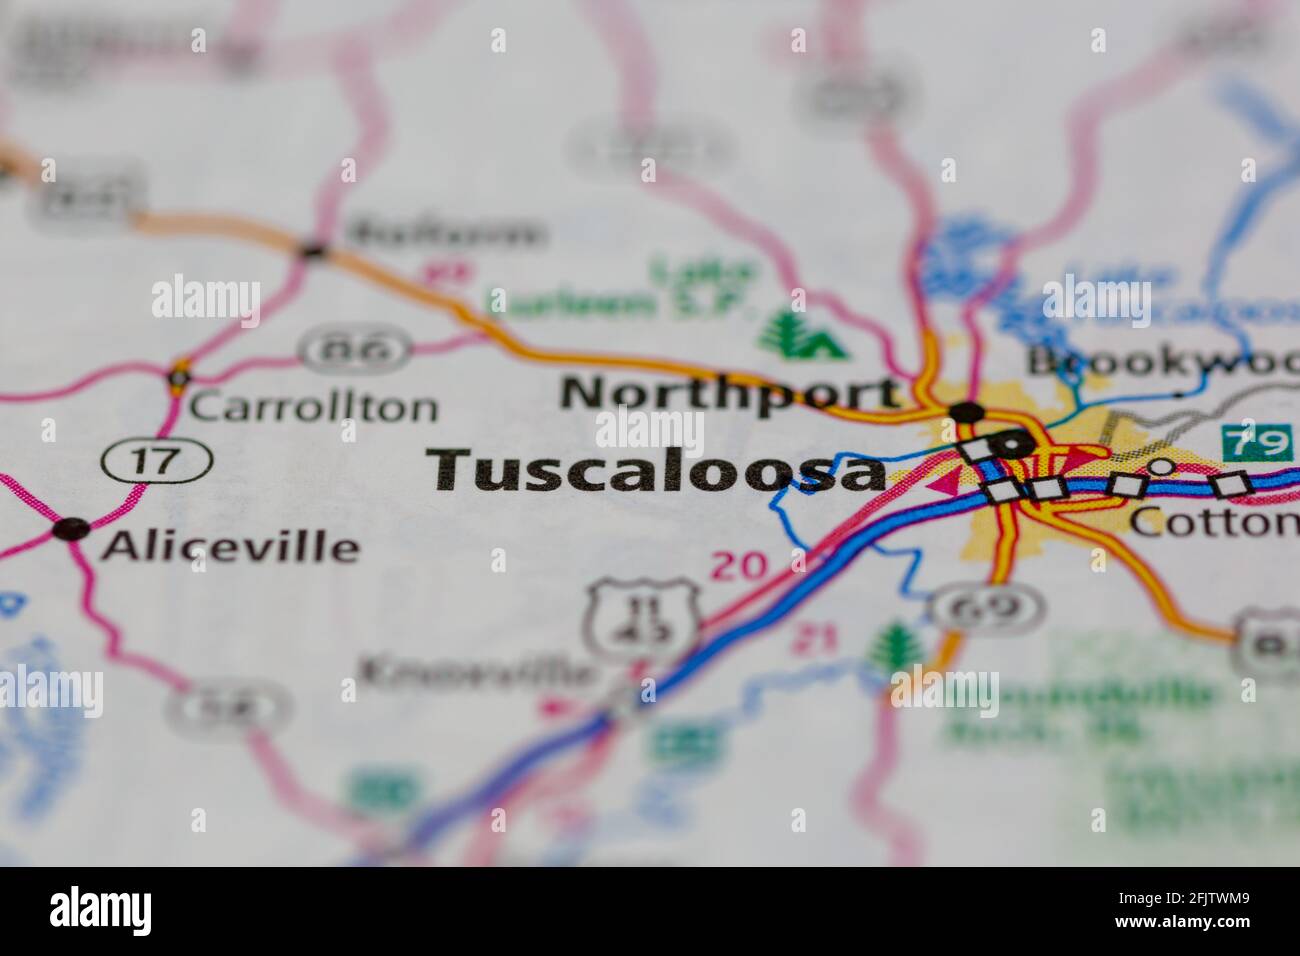 Tuscaloosa Alabama USA montré sur une carte routière ou une géographie carte Banque D'Images